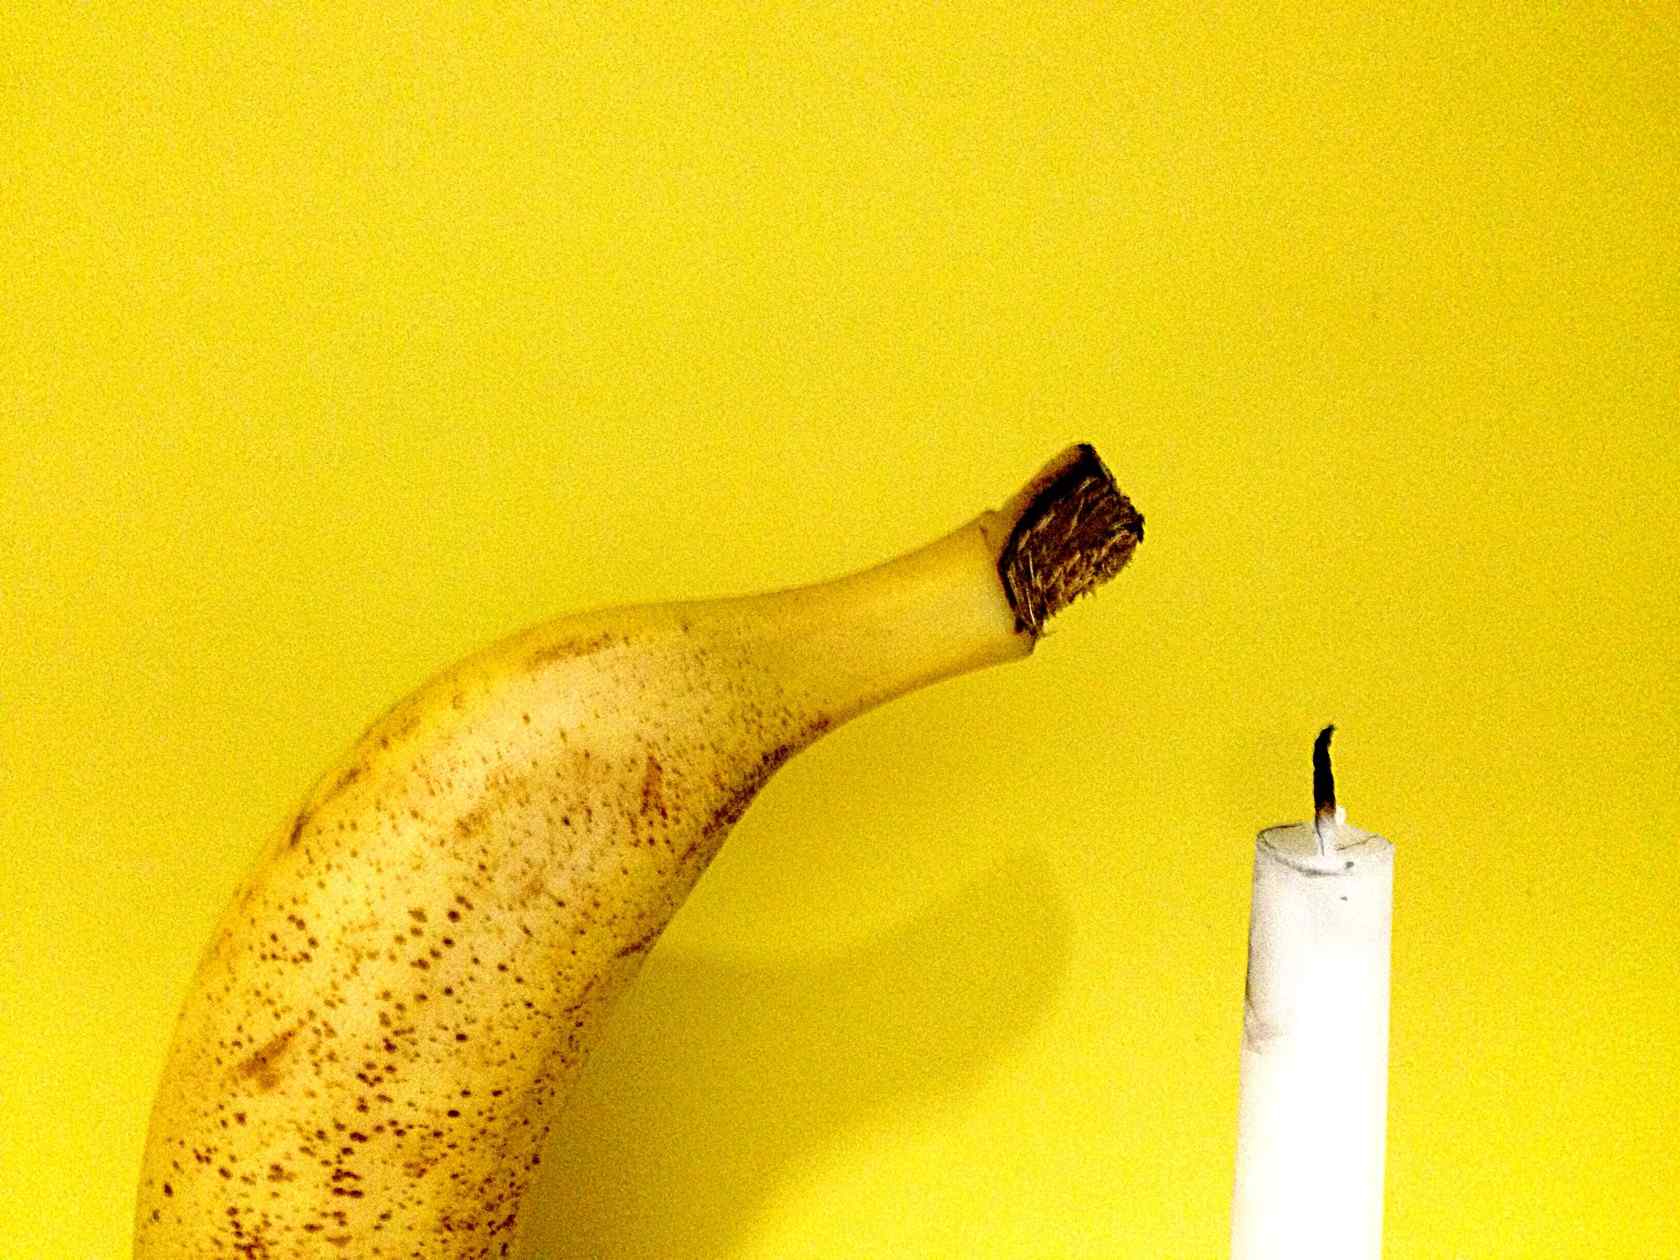 香蕉与蜡烛创意摄影图片桌面壁纸